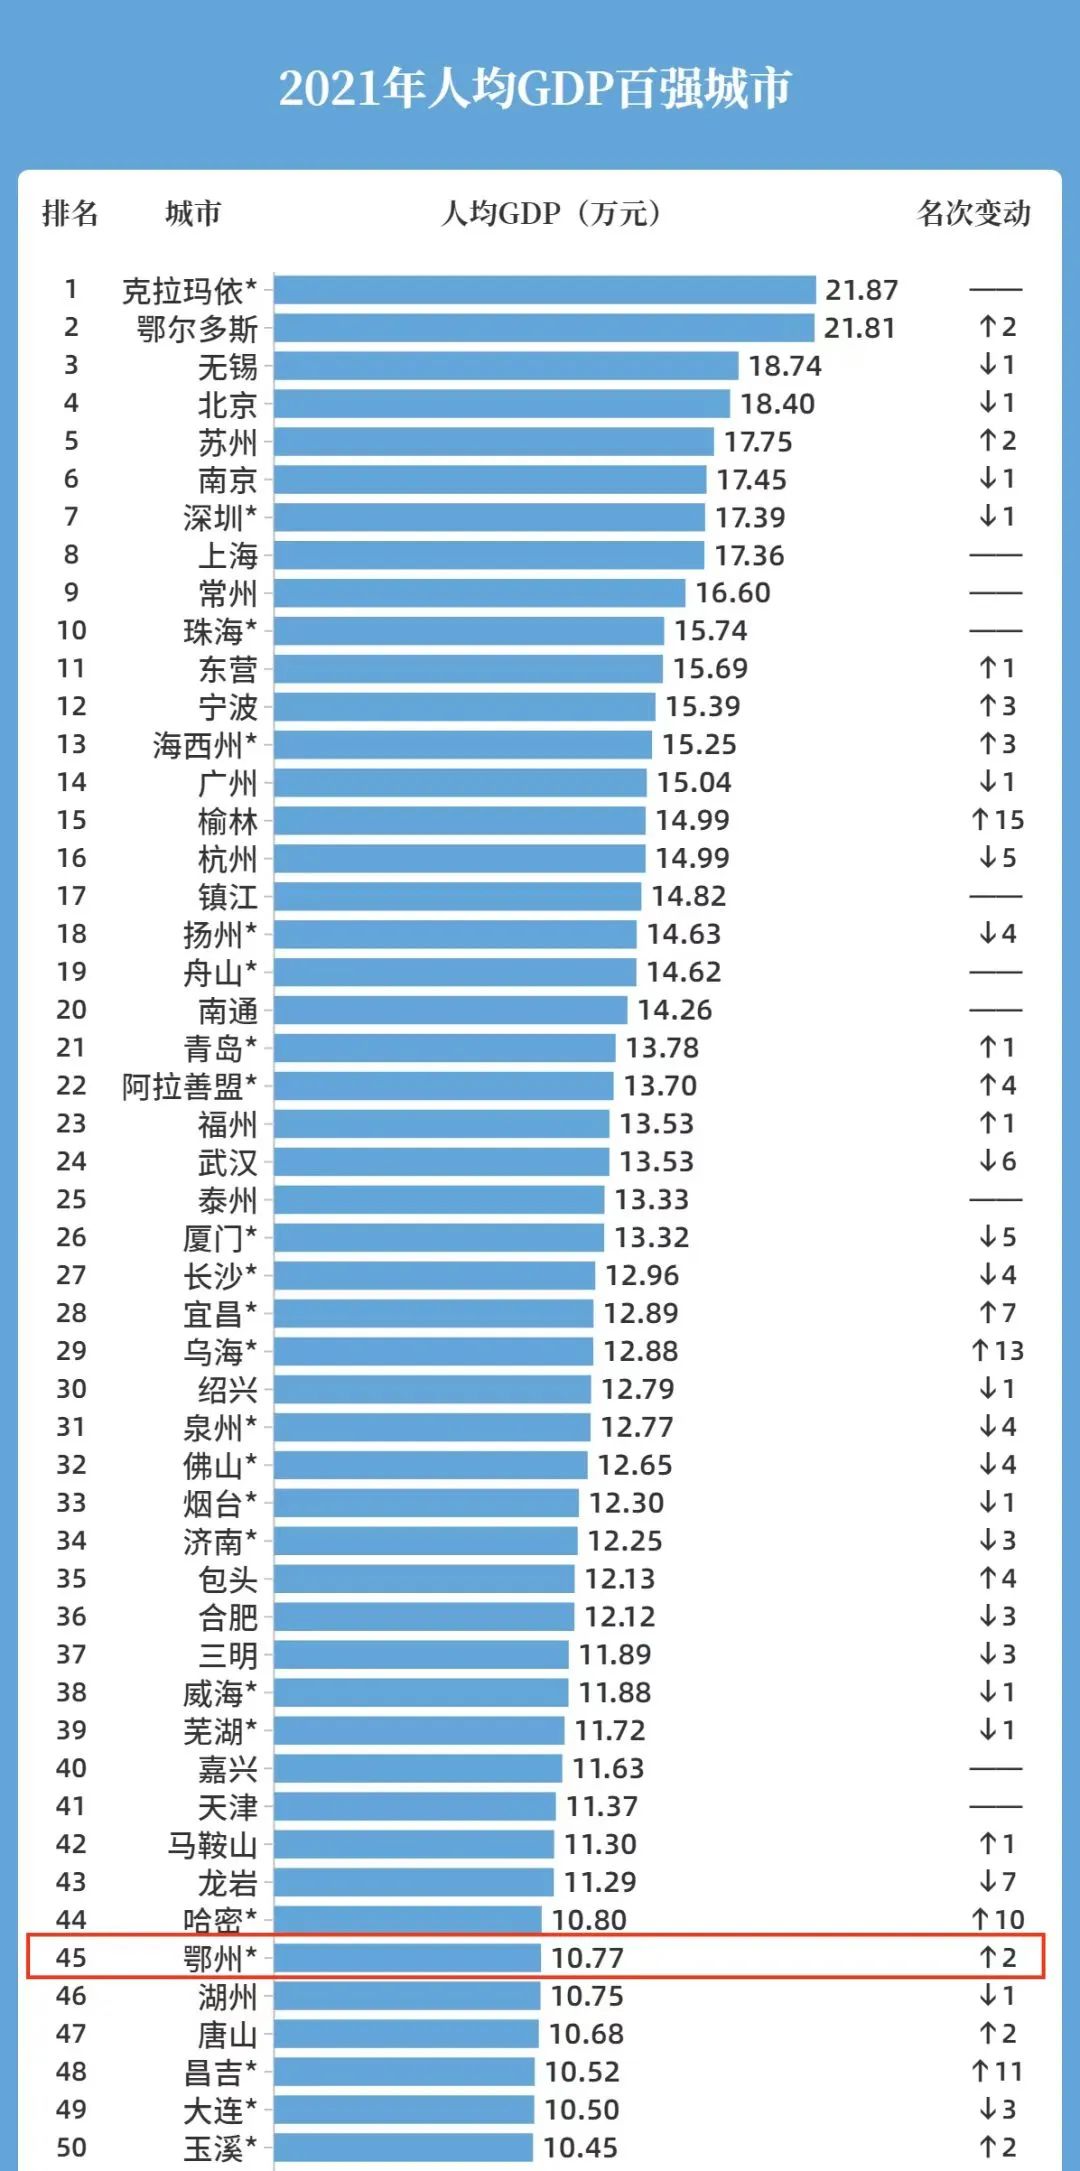 中国人均收入排名城市图片